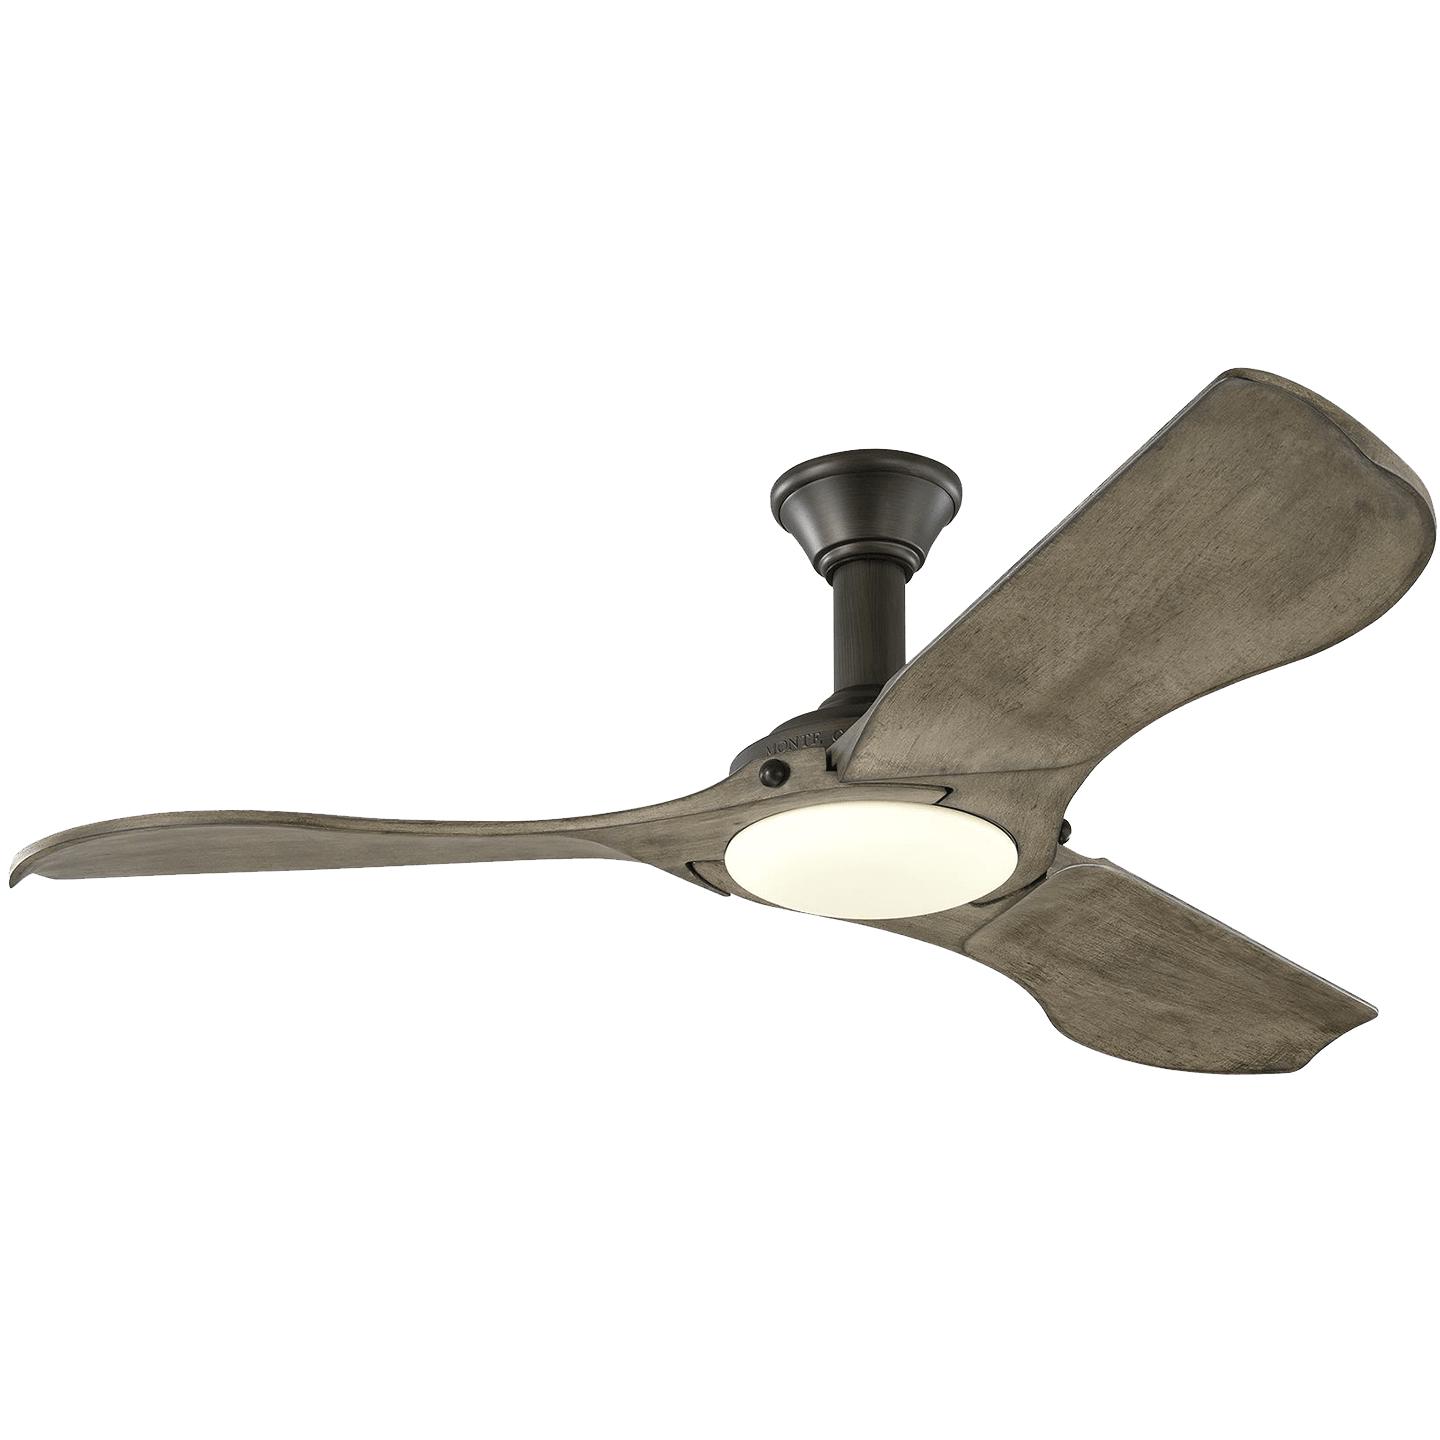 Купить Потолочный вентилятор Minimalist 56" LED Ceiling Fan в интернет-магазине roooms.ru